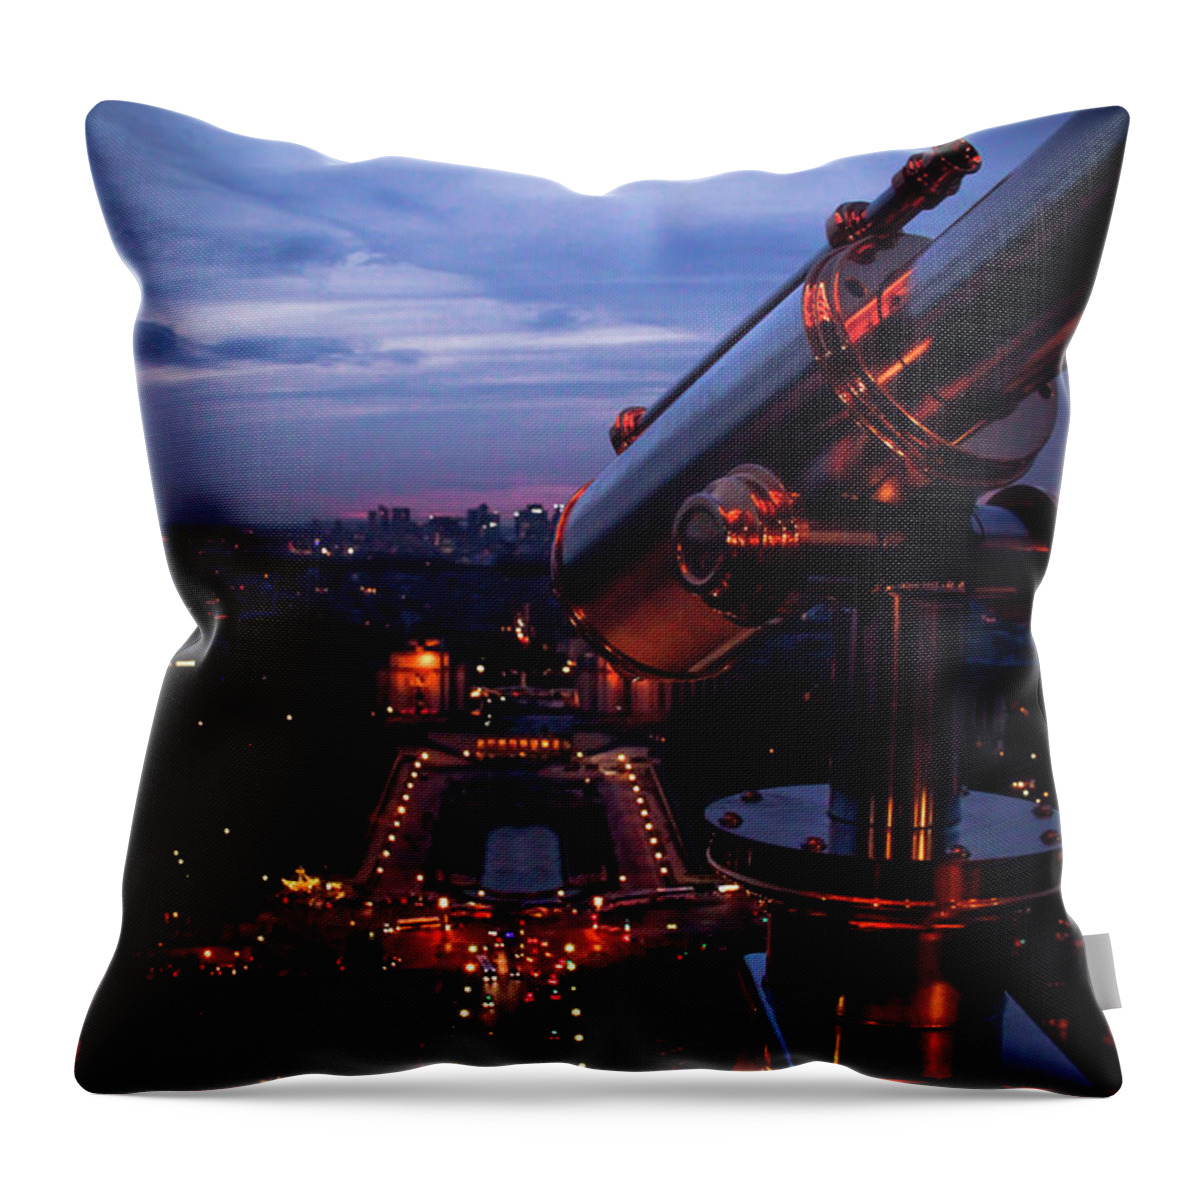 Paris Throw Pillow featuring the photograph Spyglass Over Paris by Marina McLain